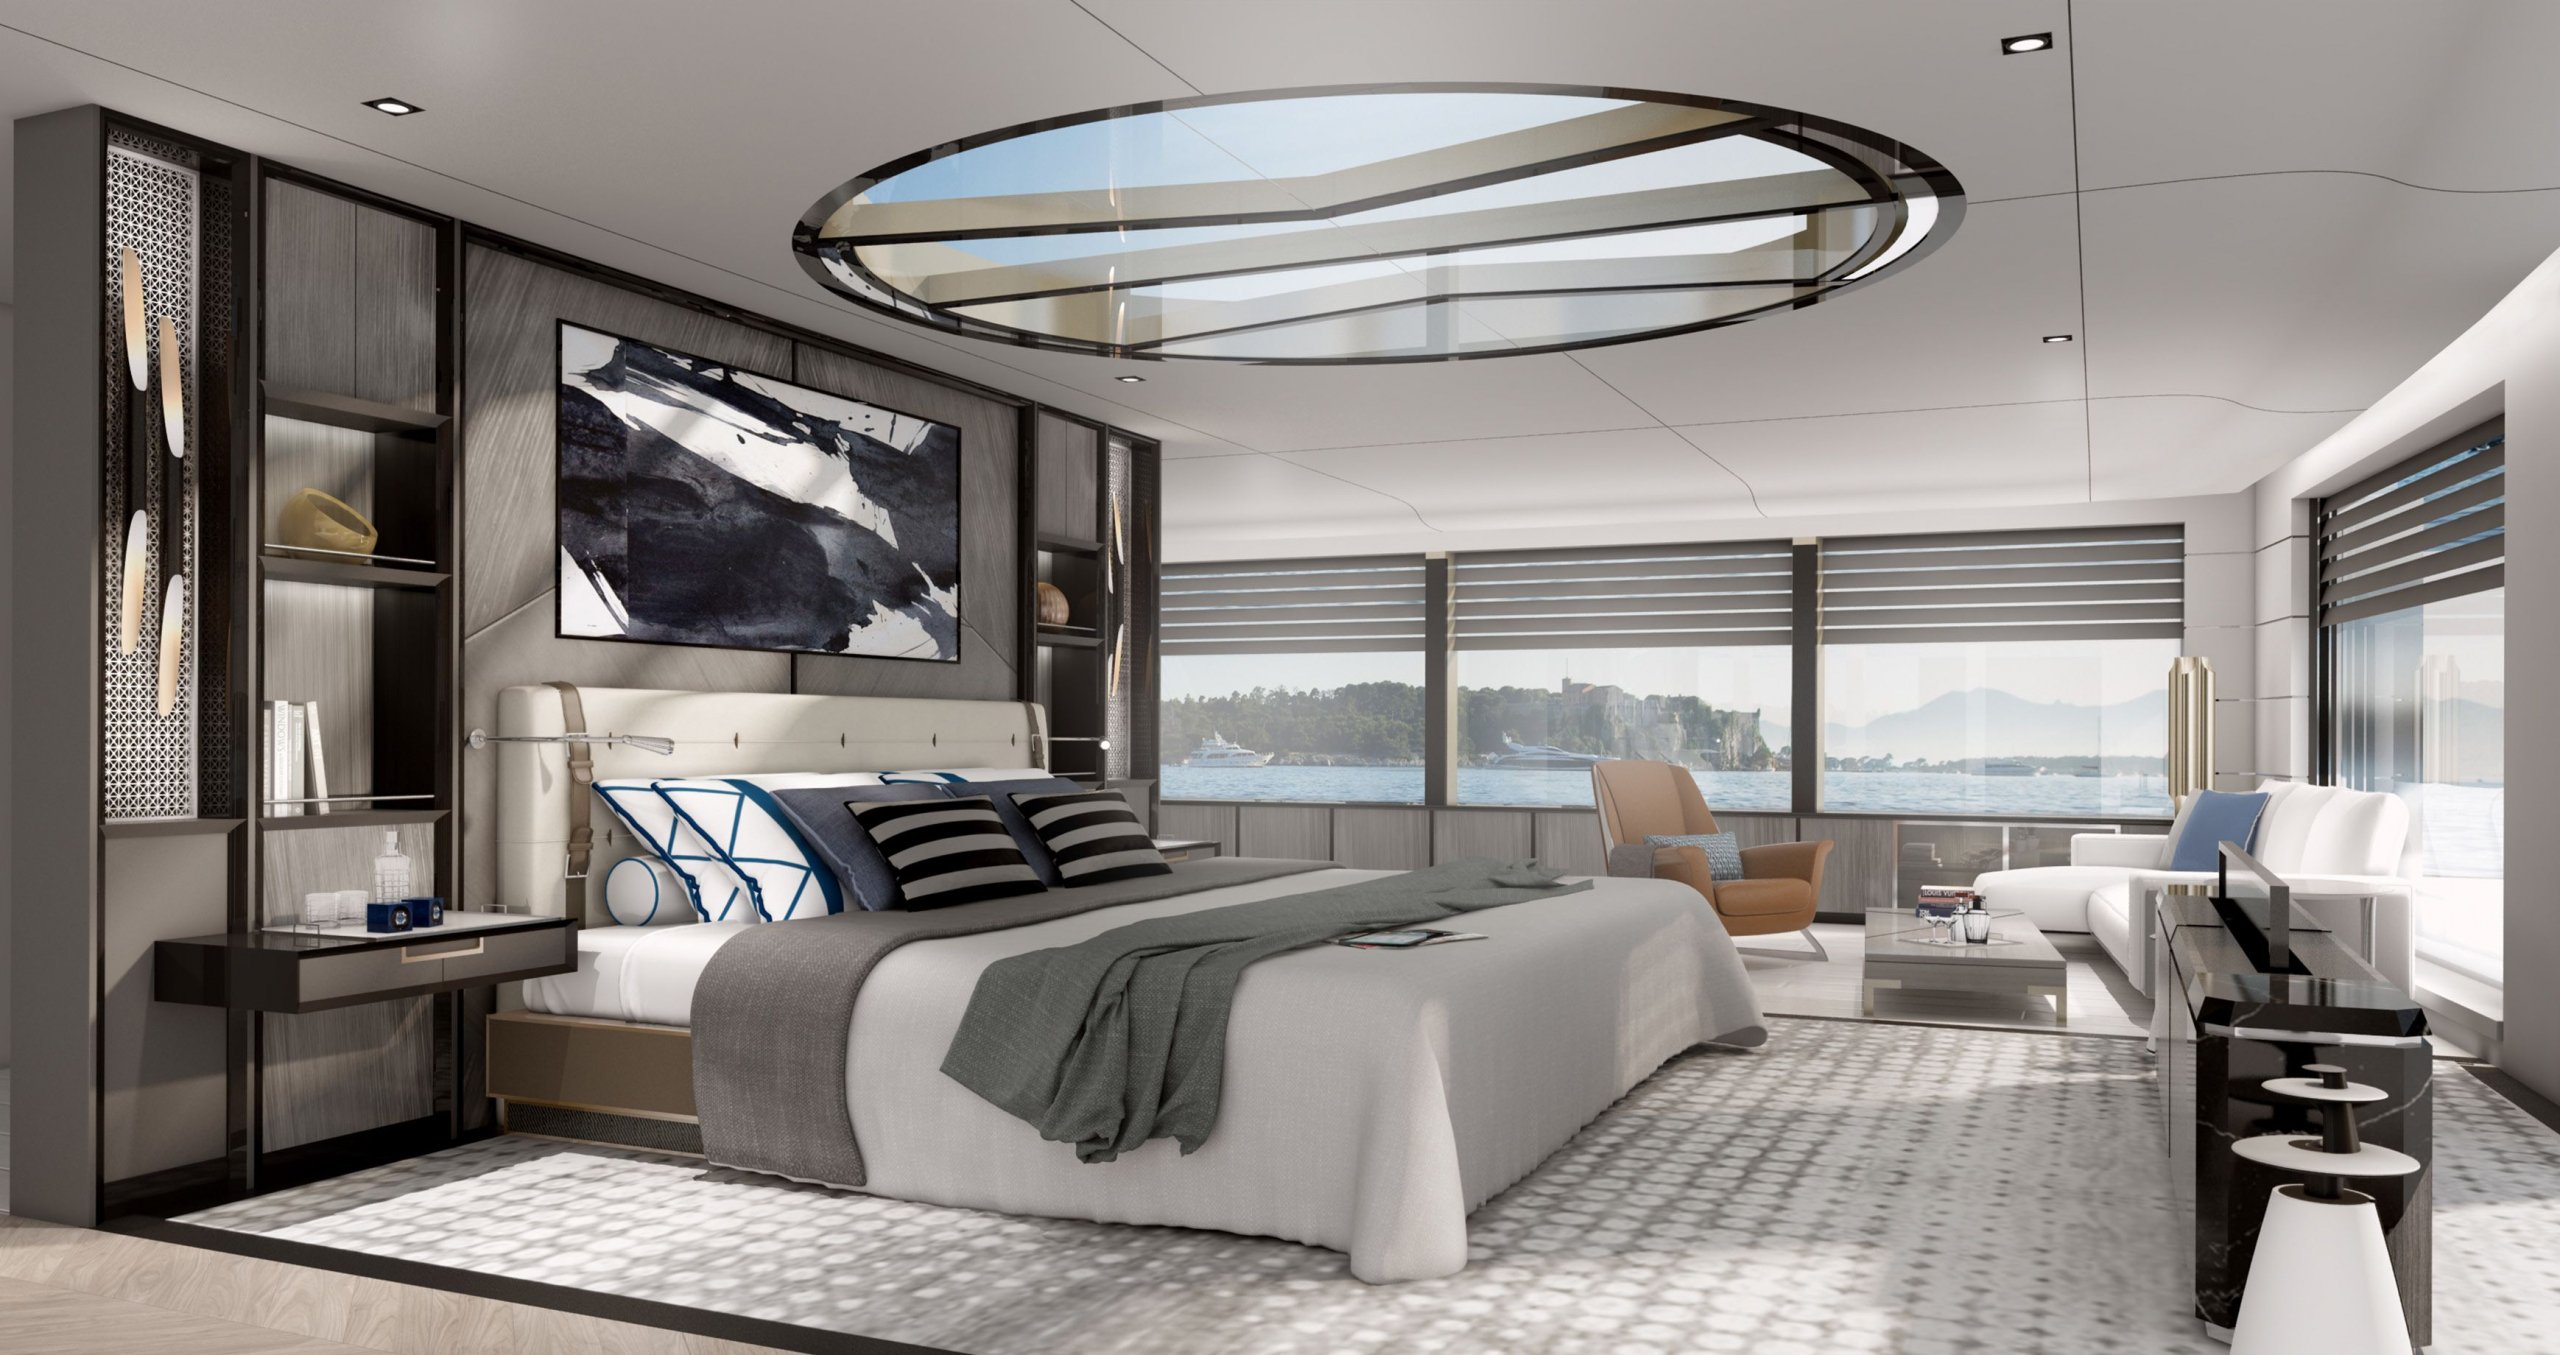 Mars et blanc yacht design intérieur